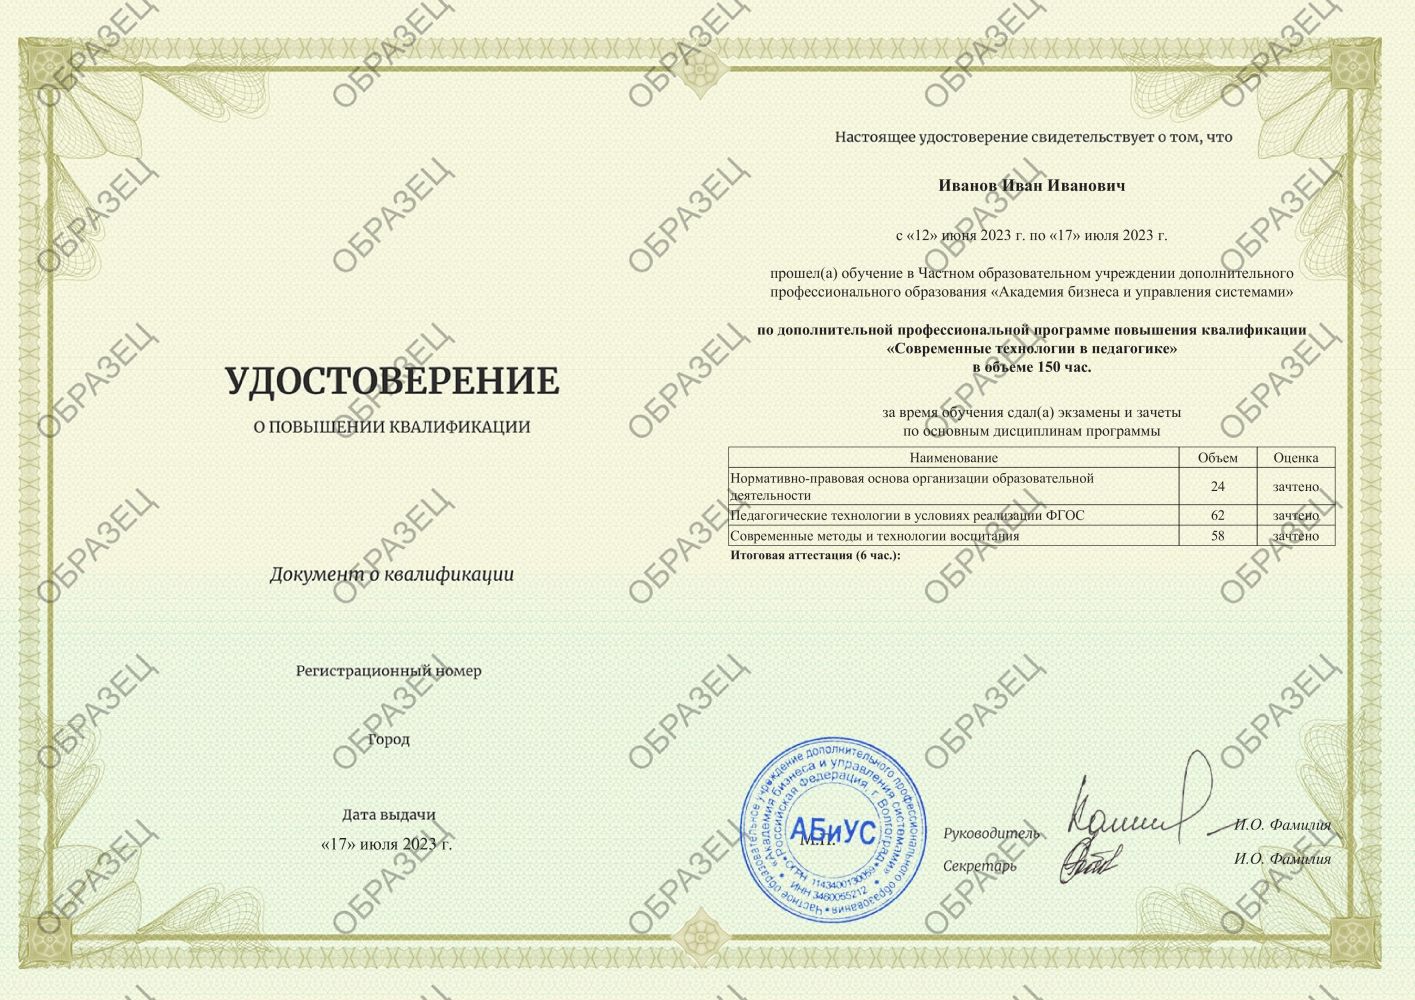 Удостоверение Современные технологии в педагогике 150 часов 4563 руб.